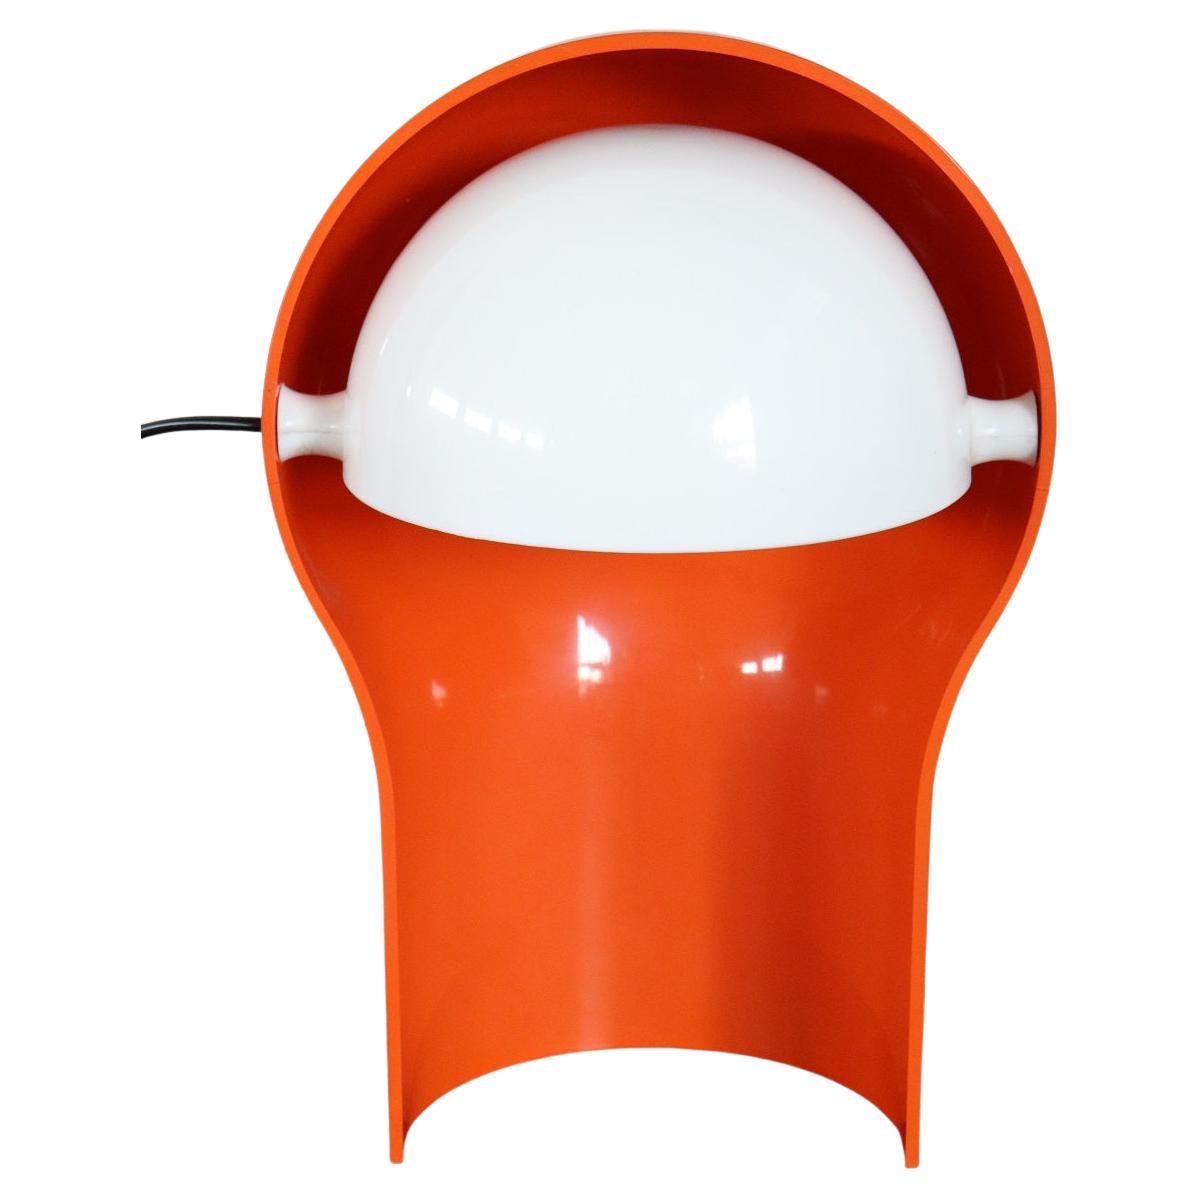 20th Century Italian Design Telegono Table Lamp by Vico Magistretti, 1960s